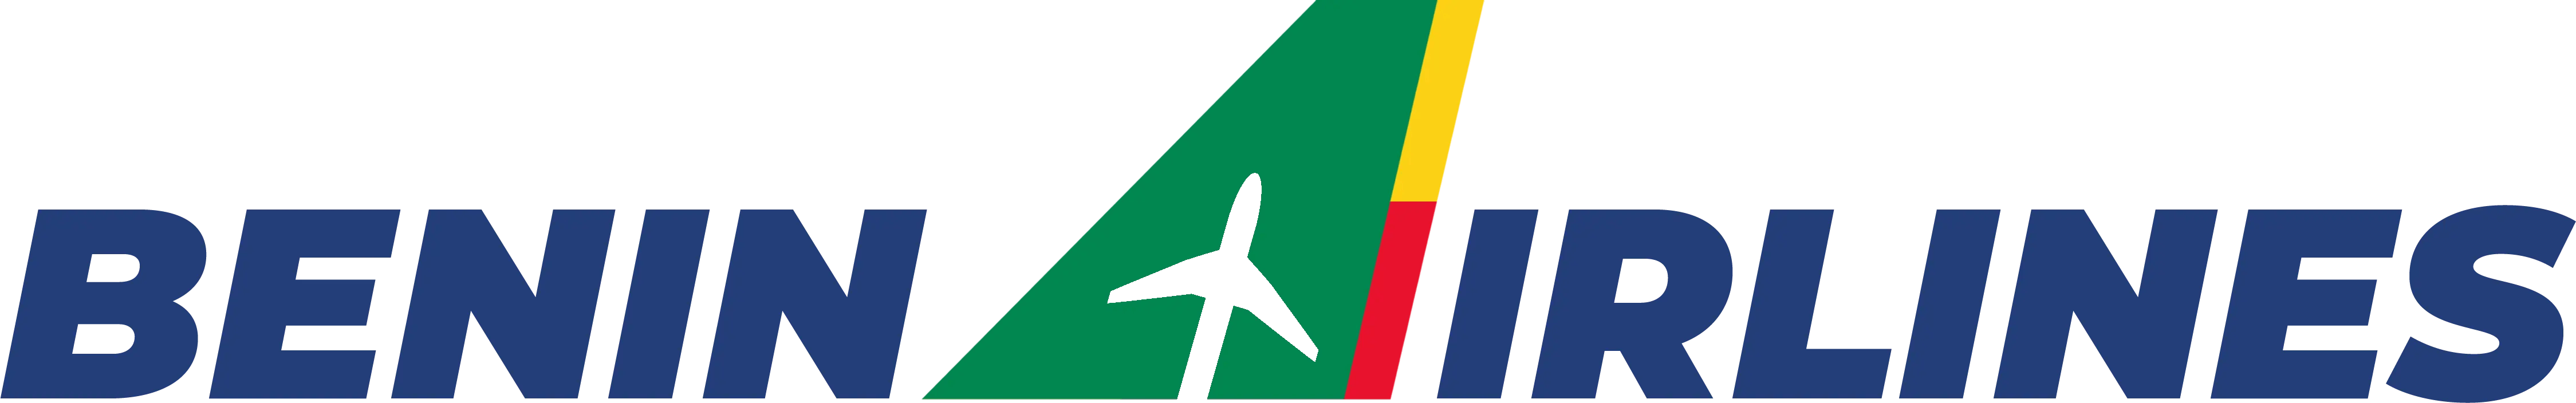 Benin Airline logo.